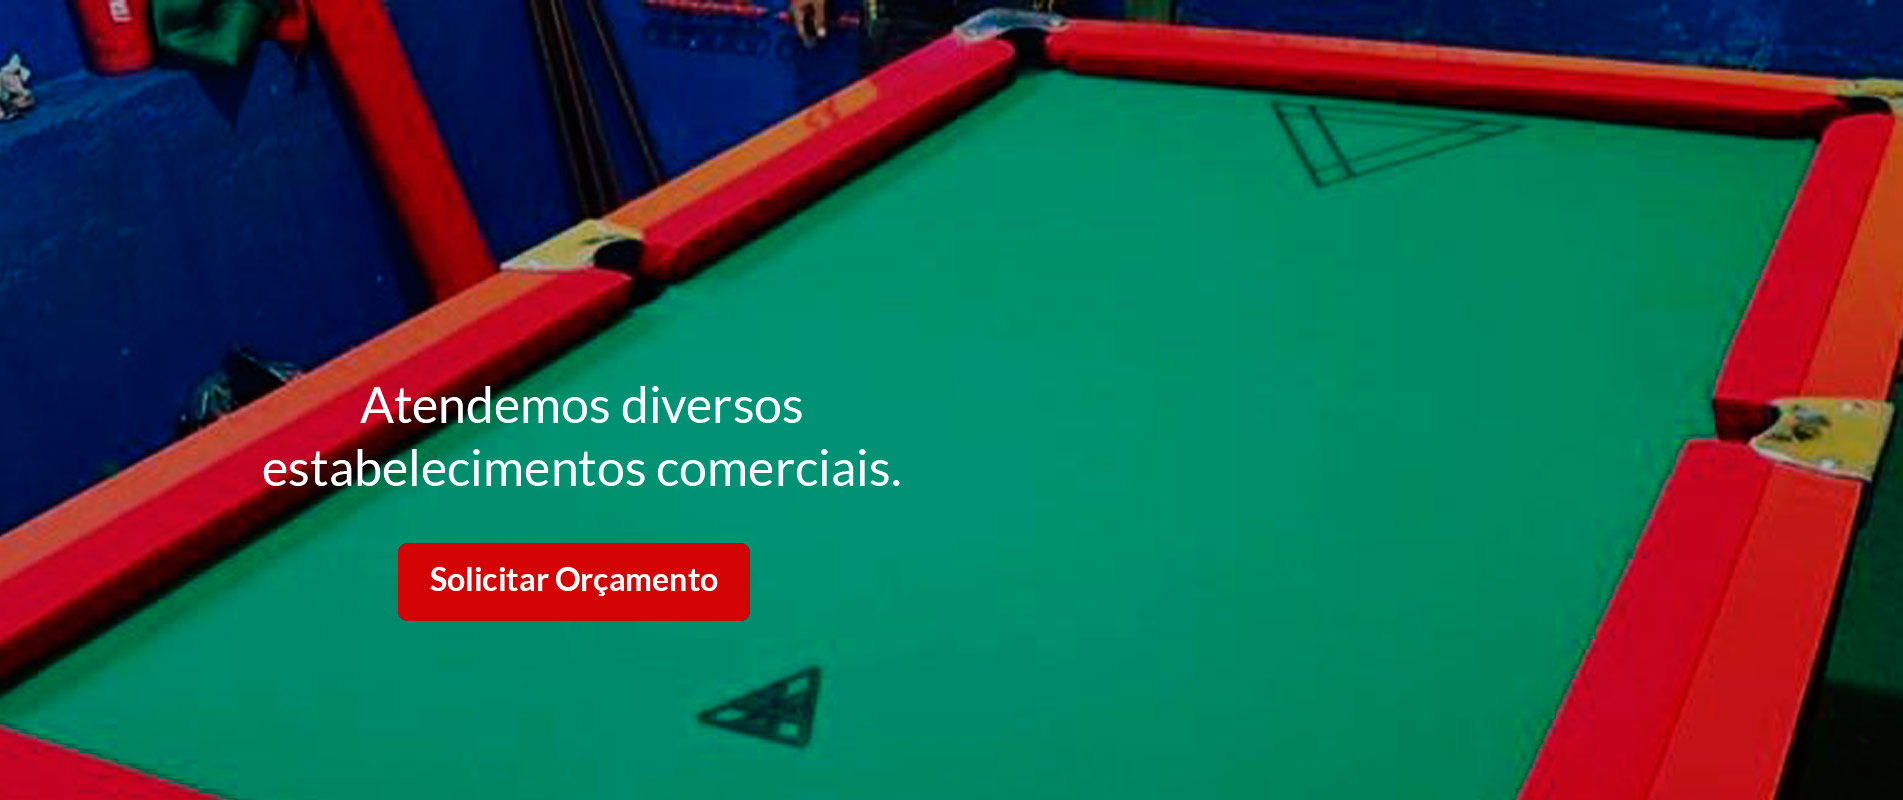 Bilhares Casa Grande - AS REGRAS DO JOGO! O jogo de bilhar é muito popular  no Brasil mas você sabe as regras e objetivos do jogo? Você sabia que  existem diversas maneiras